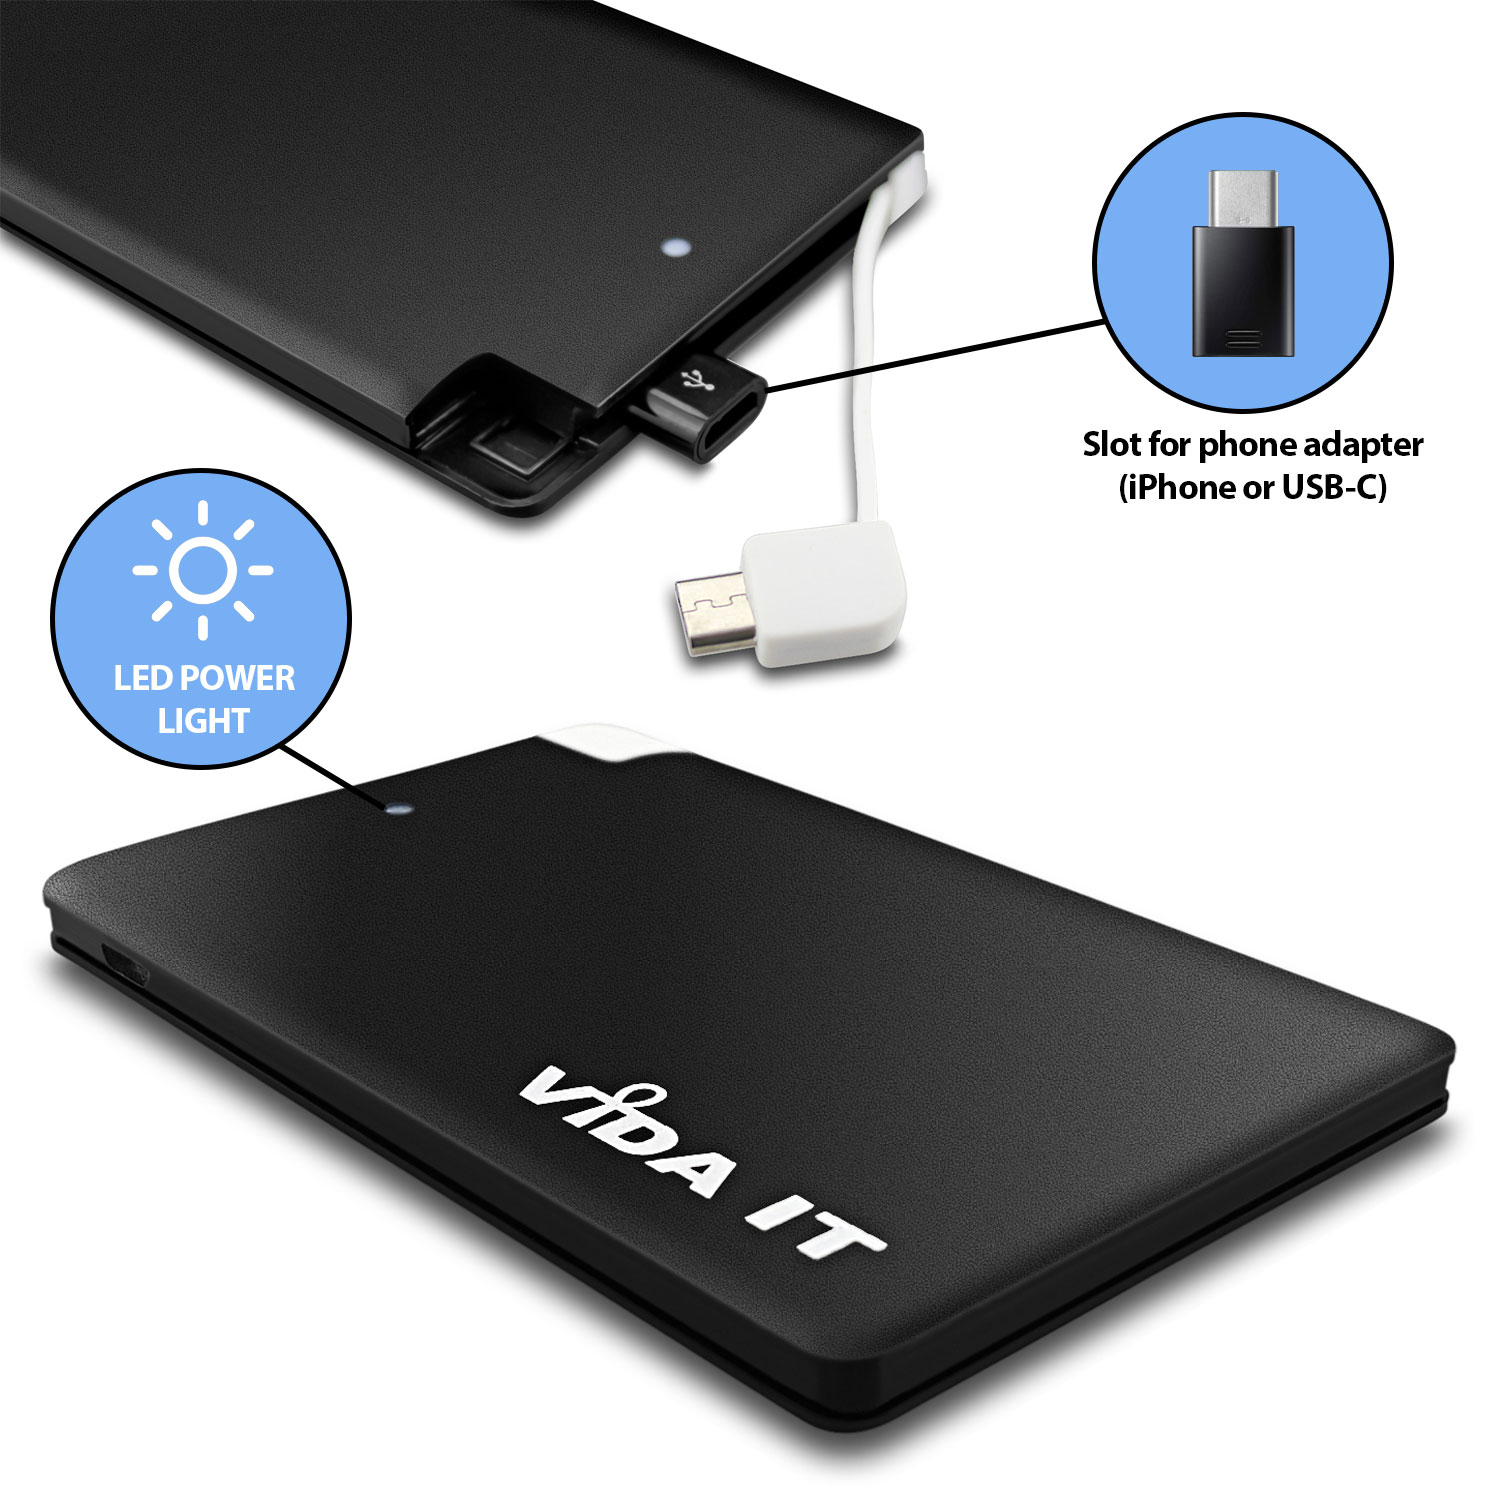 Tragbare Akku Extern PowerBank 2500mAh Ladegerät mit einem integrierten Micro-USB-Kabel & iPhone- und USB Typ-C Adaptern